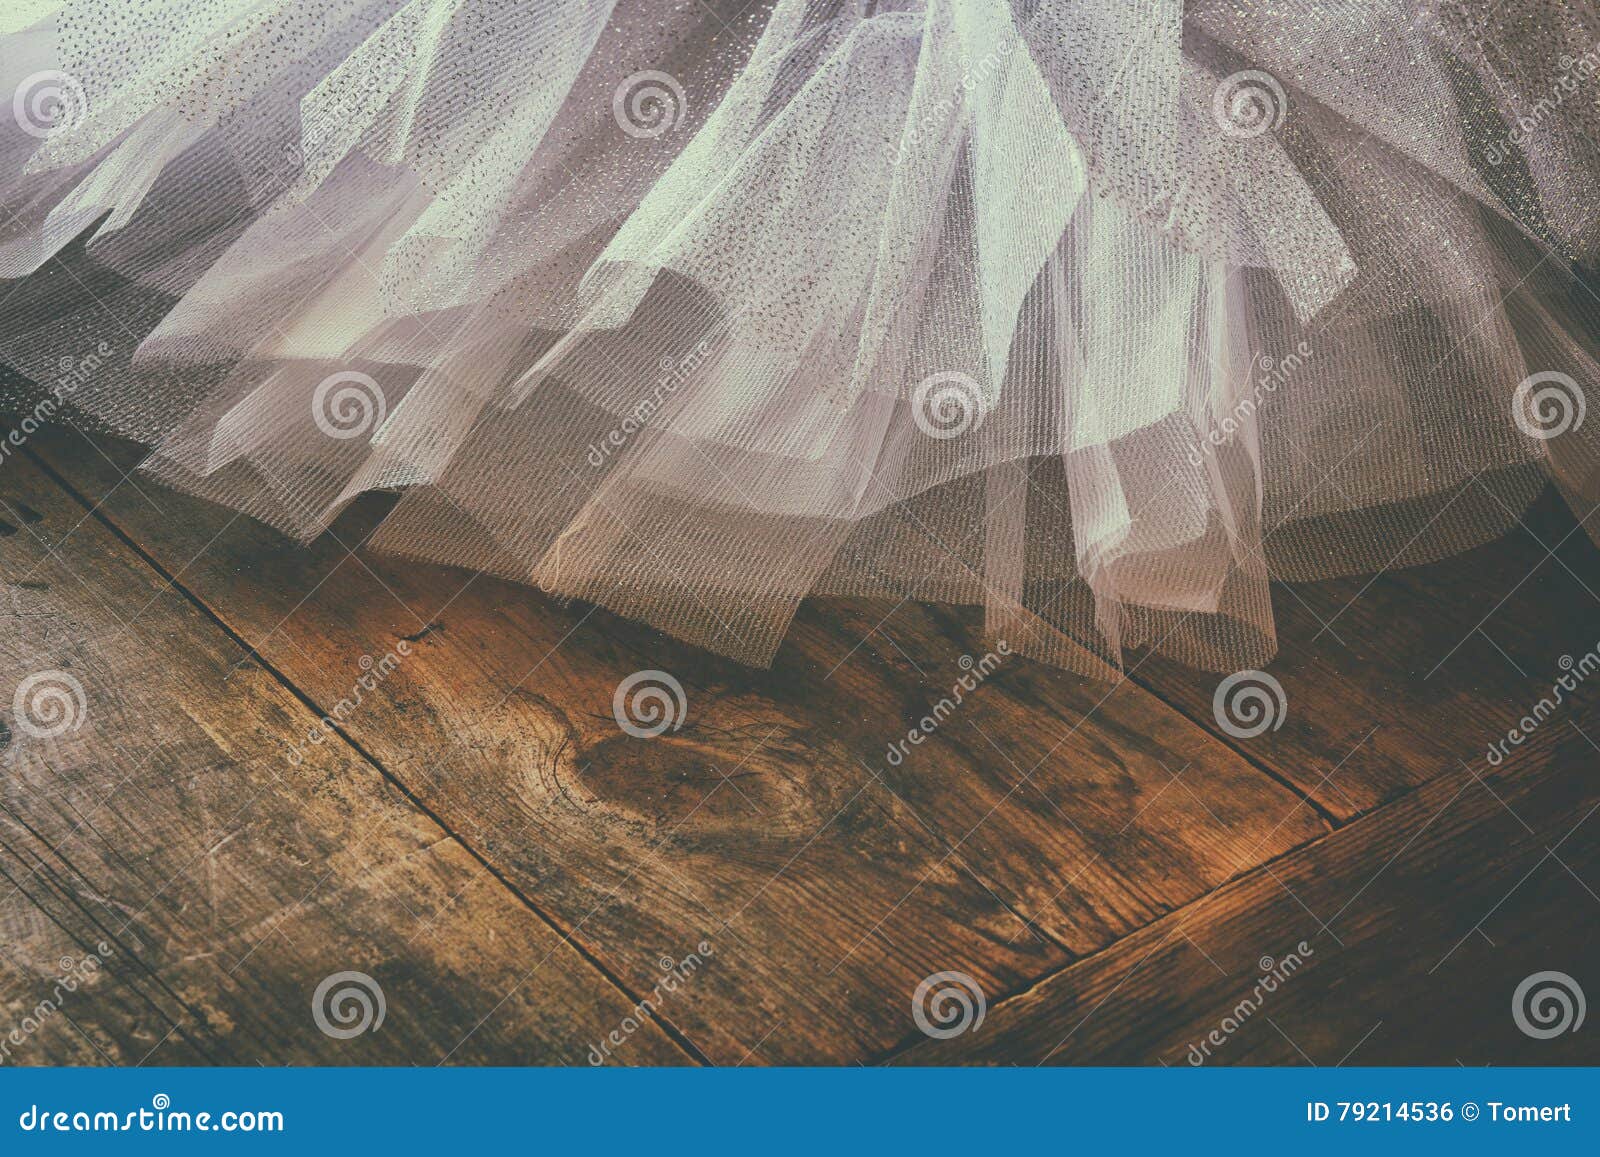 white ballet tutu on wooden floor. retro filtered